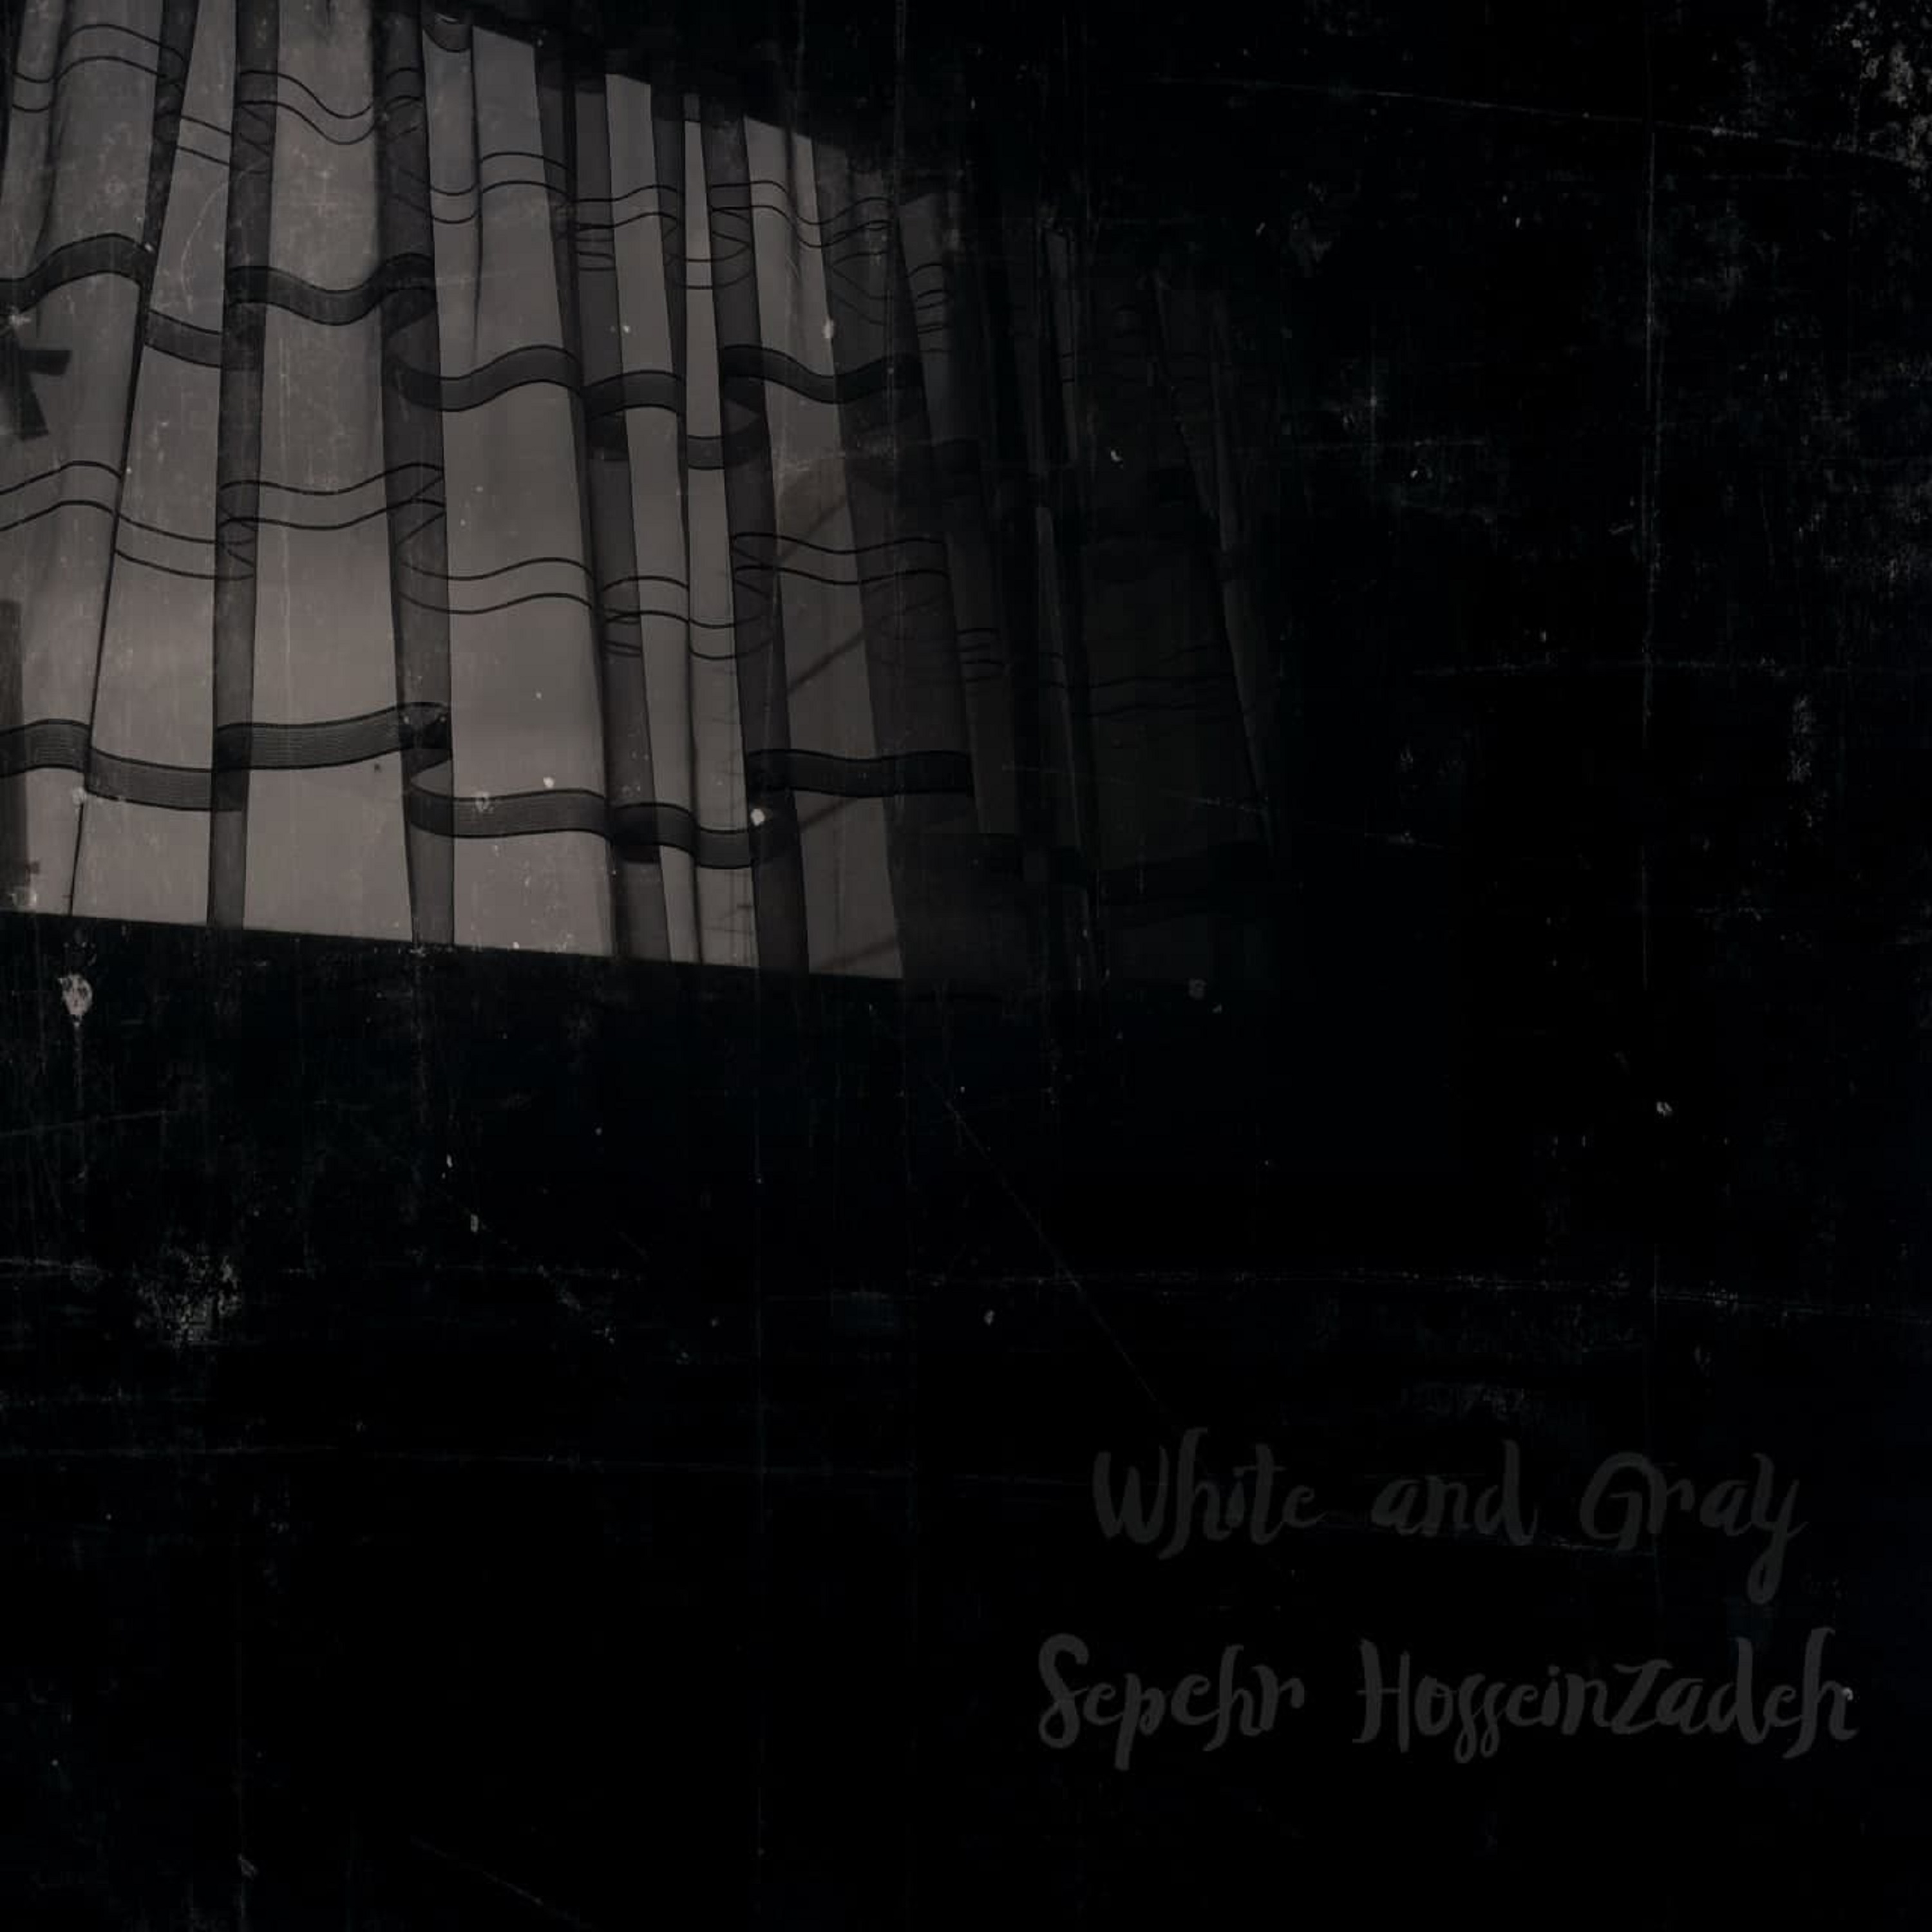  دانلود آهنگ جدید سپهر حسین زاده - سفید و خاکستری | Download New Music By Sepehr Hosseinzadeh - White And Gray